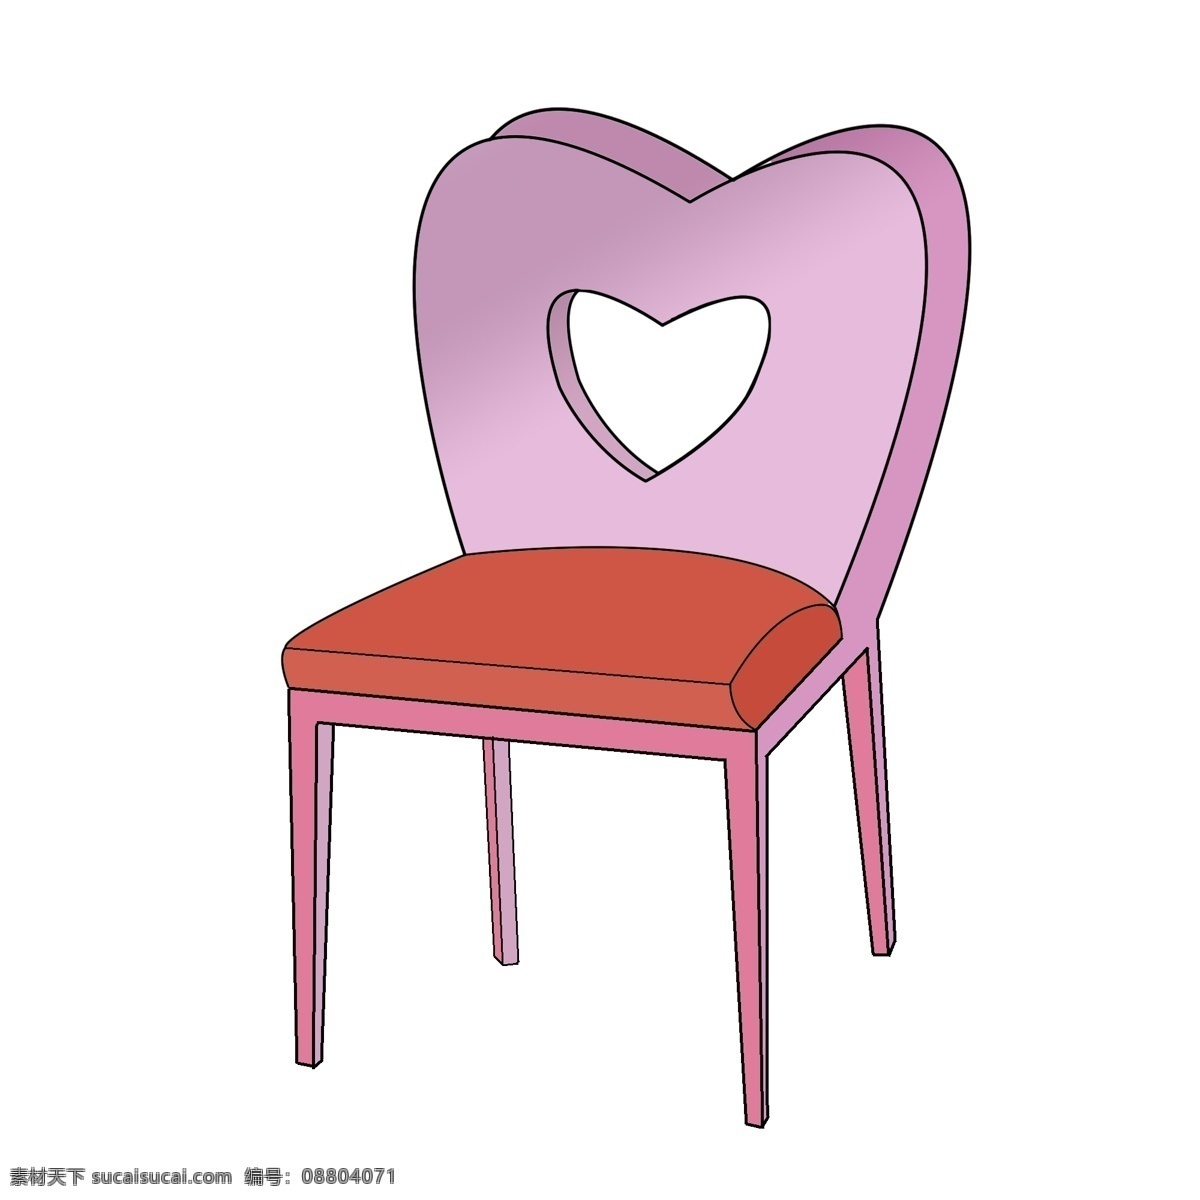 粉色 心形 靠背椅 插画 粉色的椅子 心形装饰 红色 坐垫 家具家私 化妆凳插画 时尚靠背椅